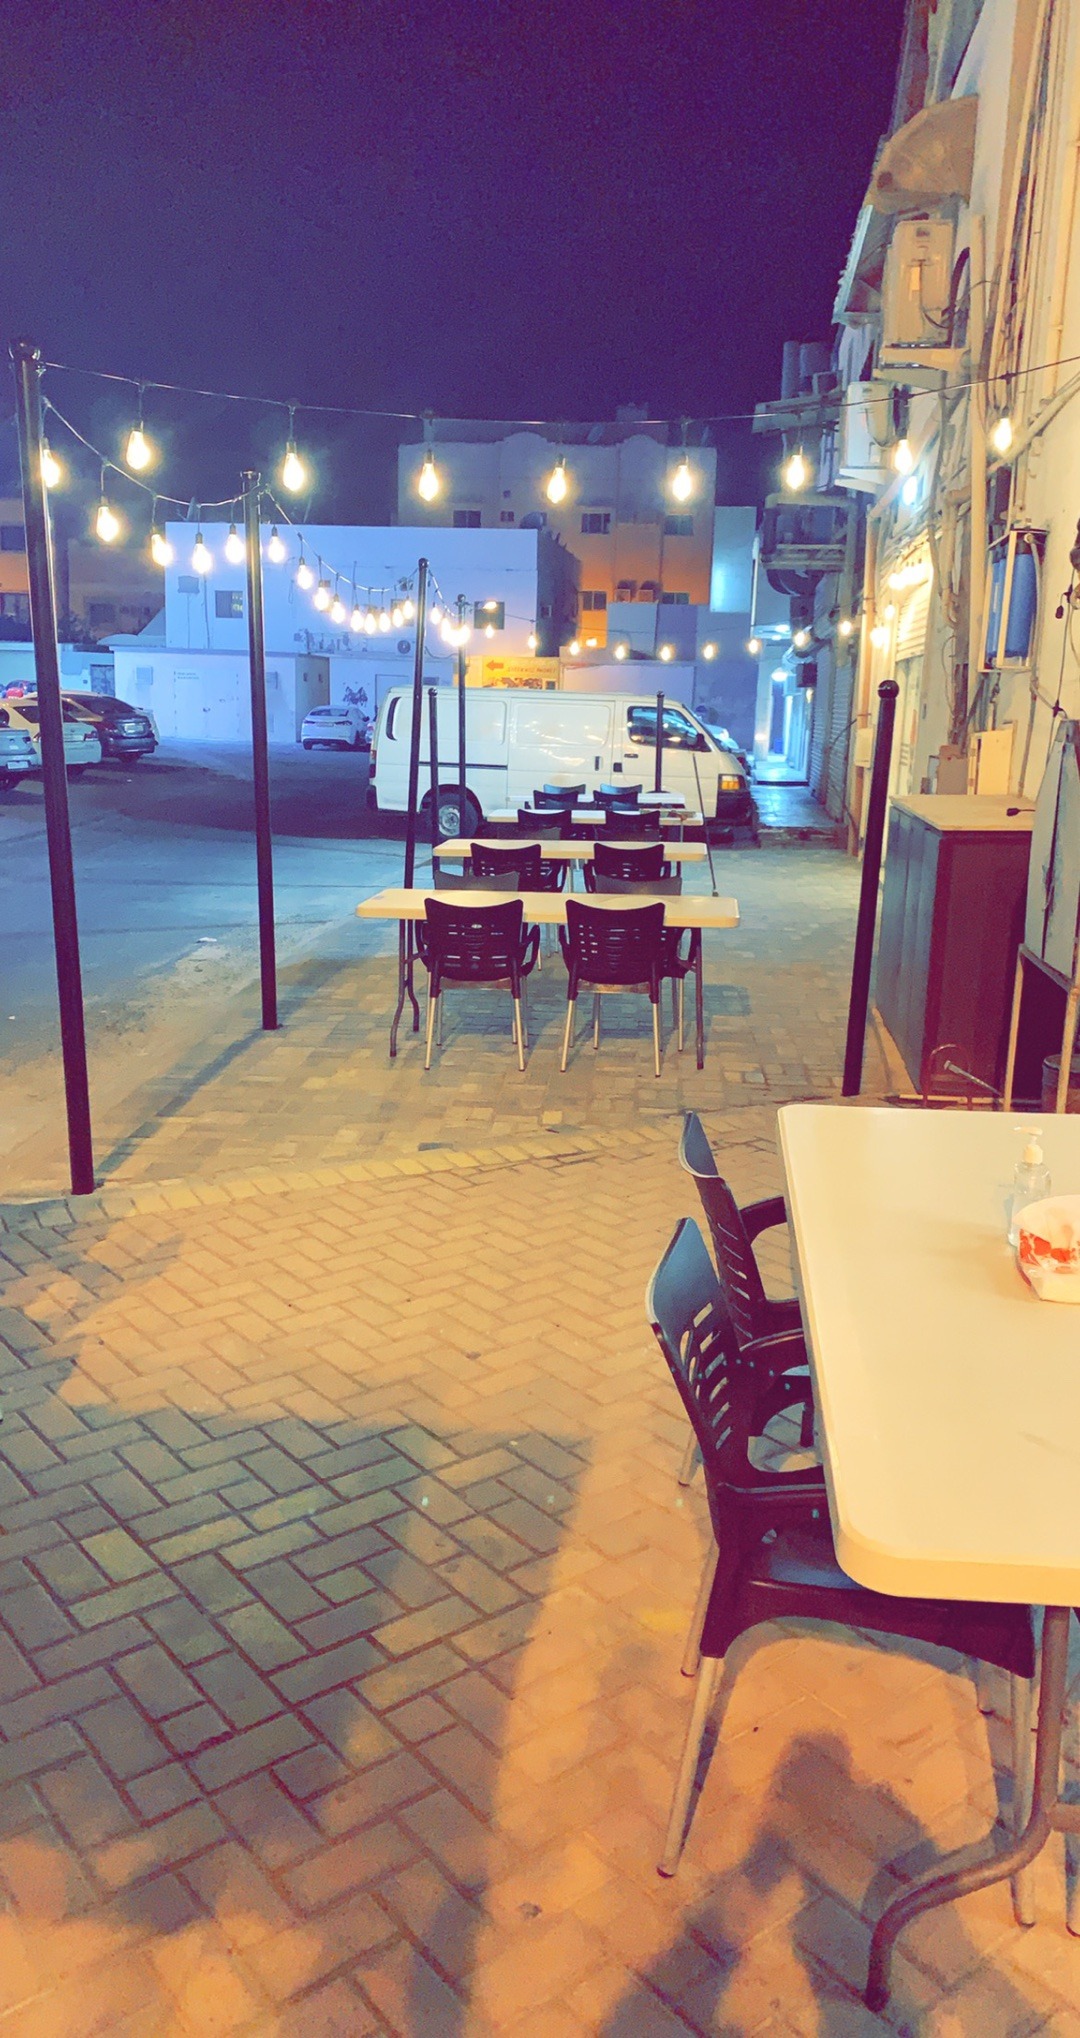 abu ali cafe - Bahrain